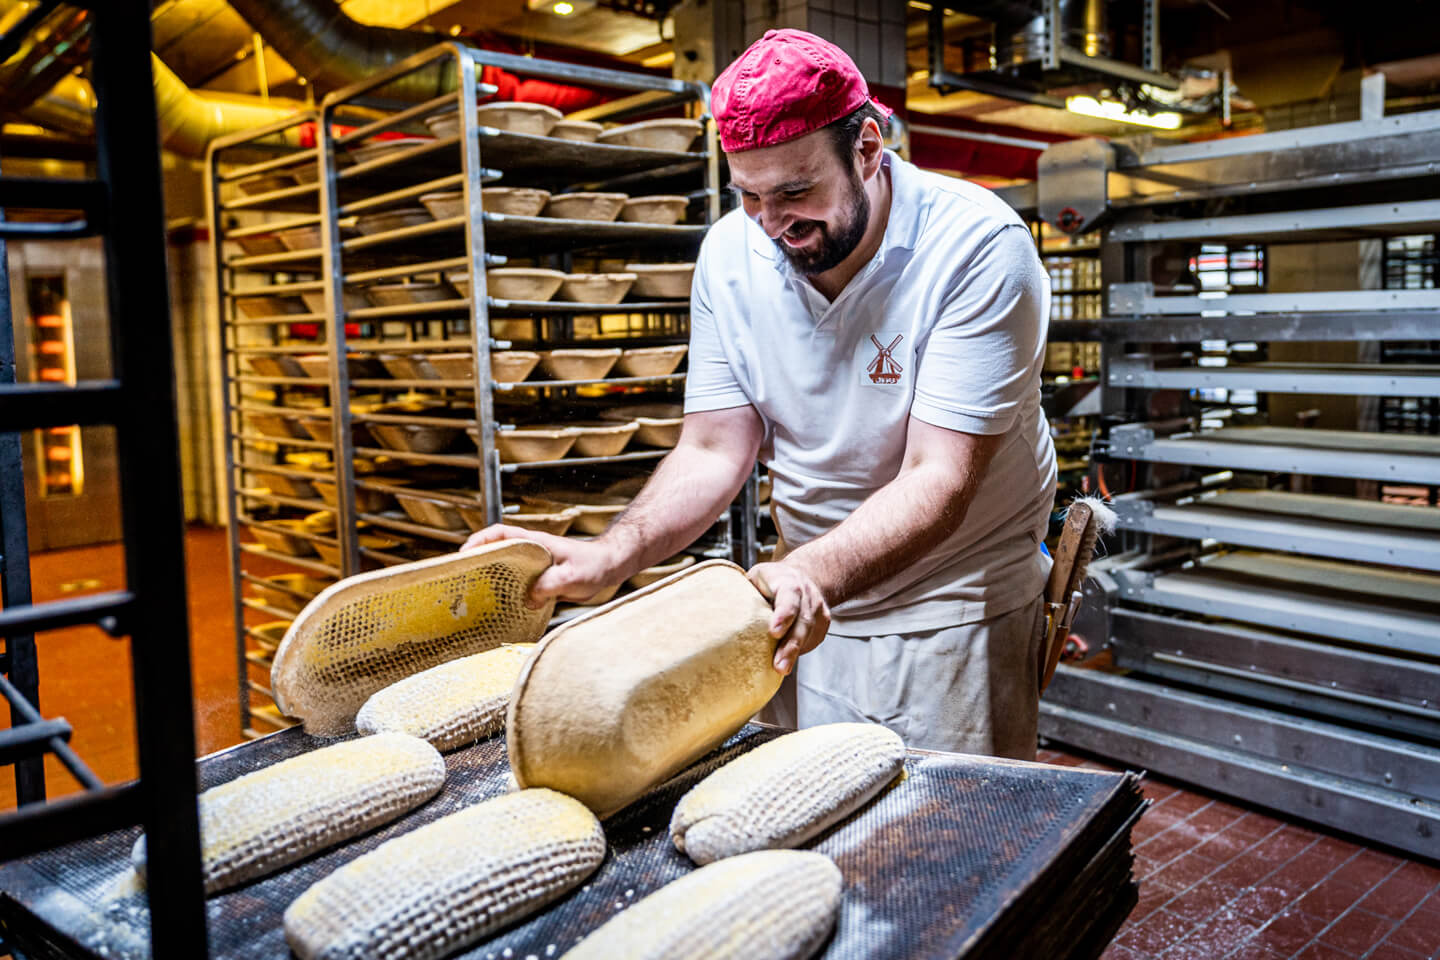 Bäcker bei der Arbeit. Fotografiert von Florian Läufer, Hamburg